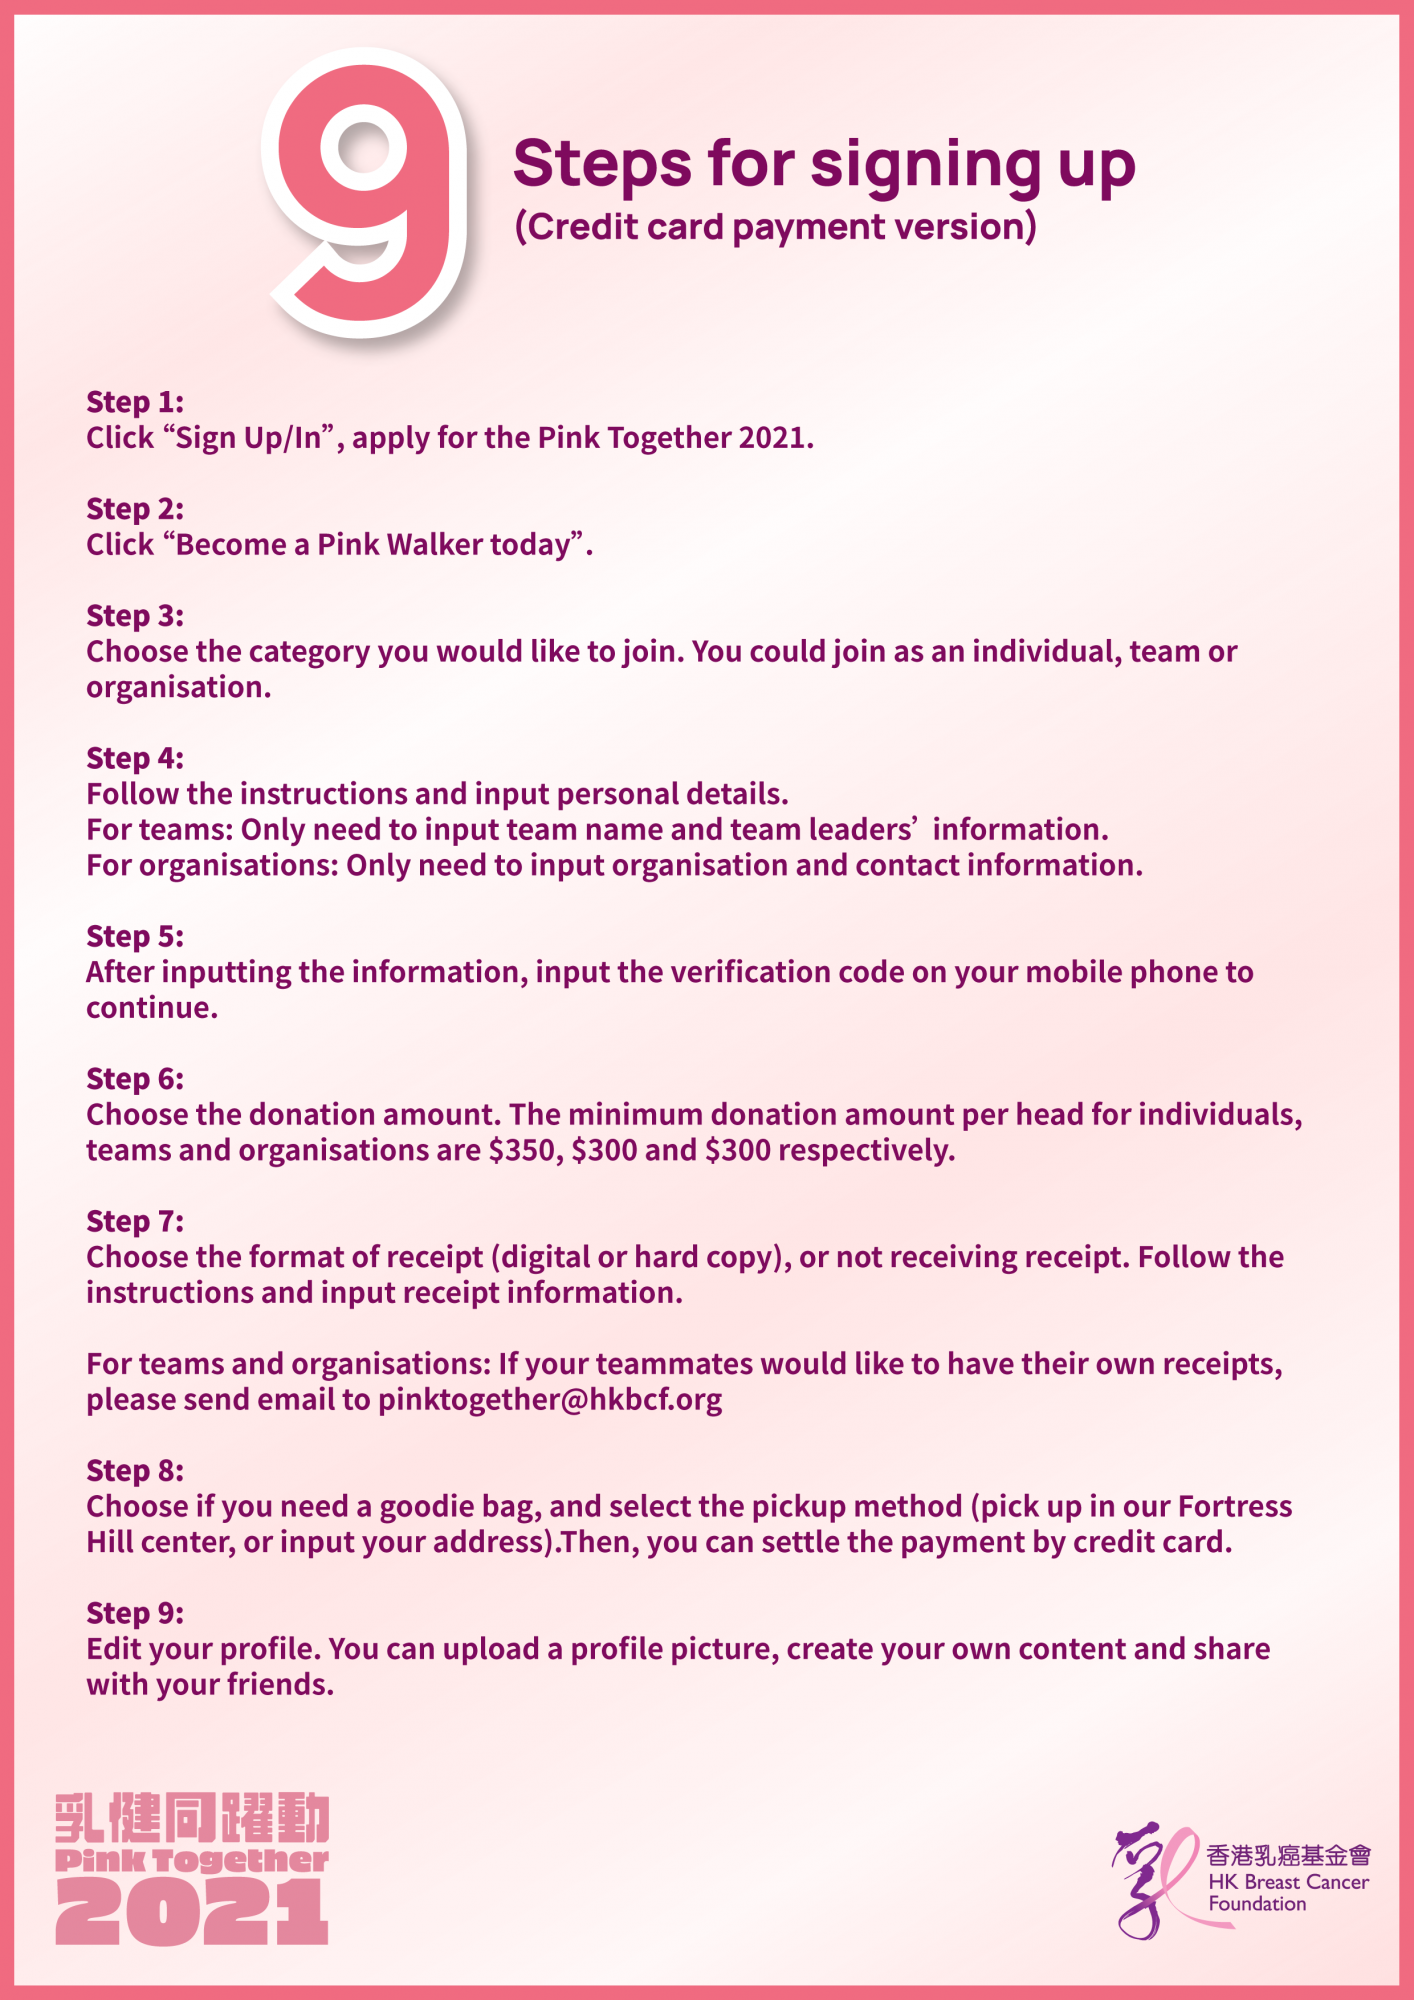 Self Photos / Files - Pink Together 2021 - Bible for registration_Full Steps (EN version)